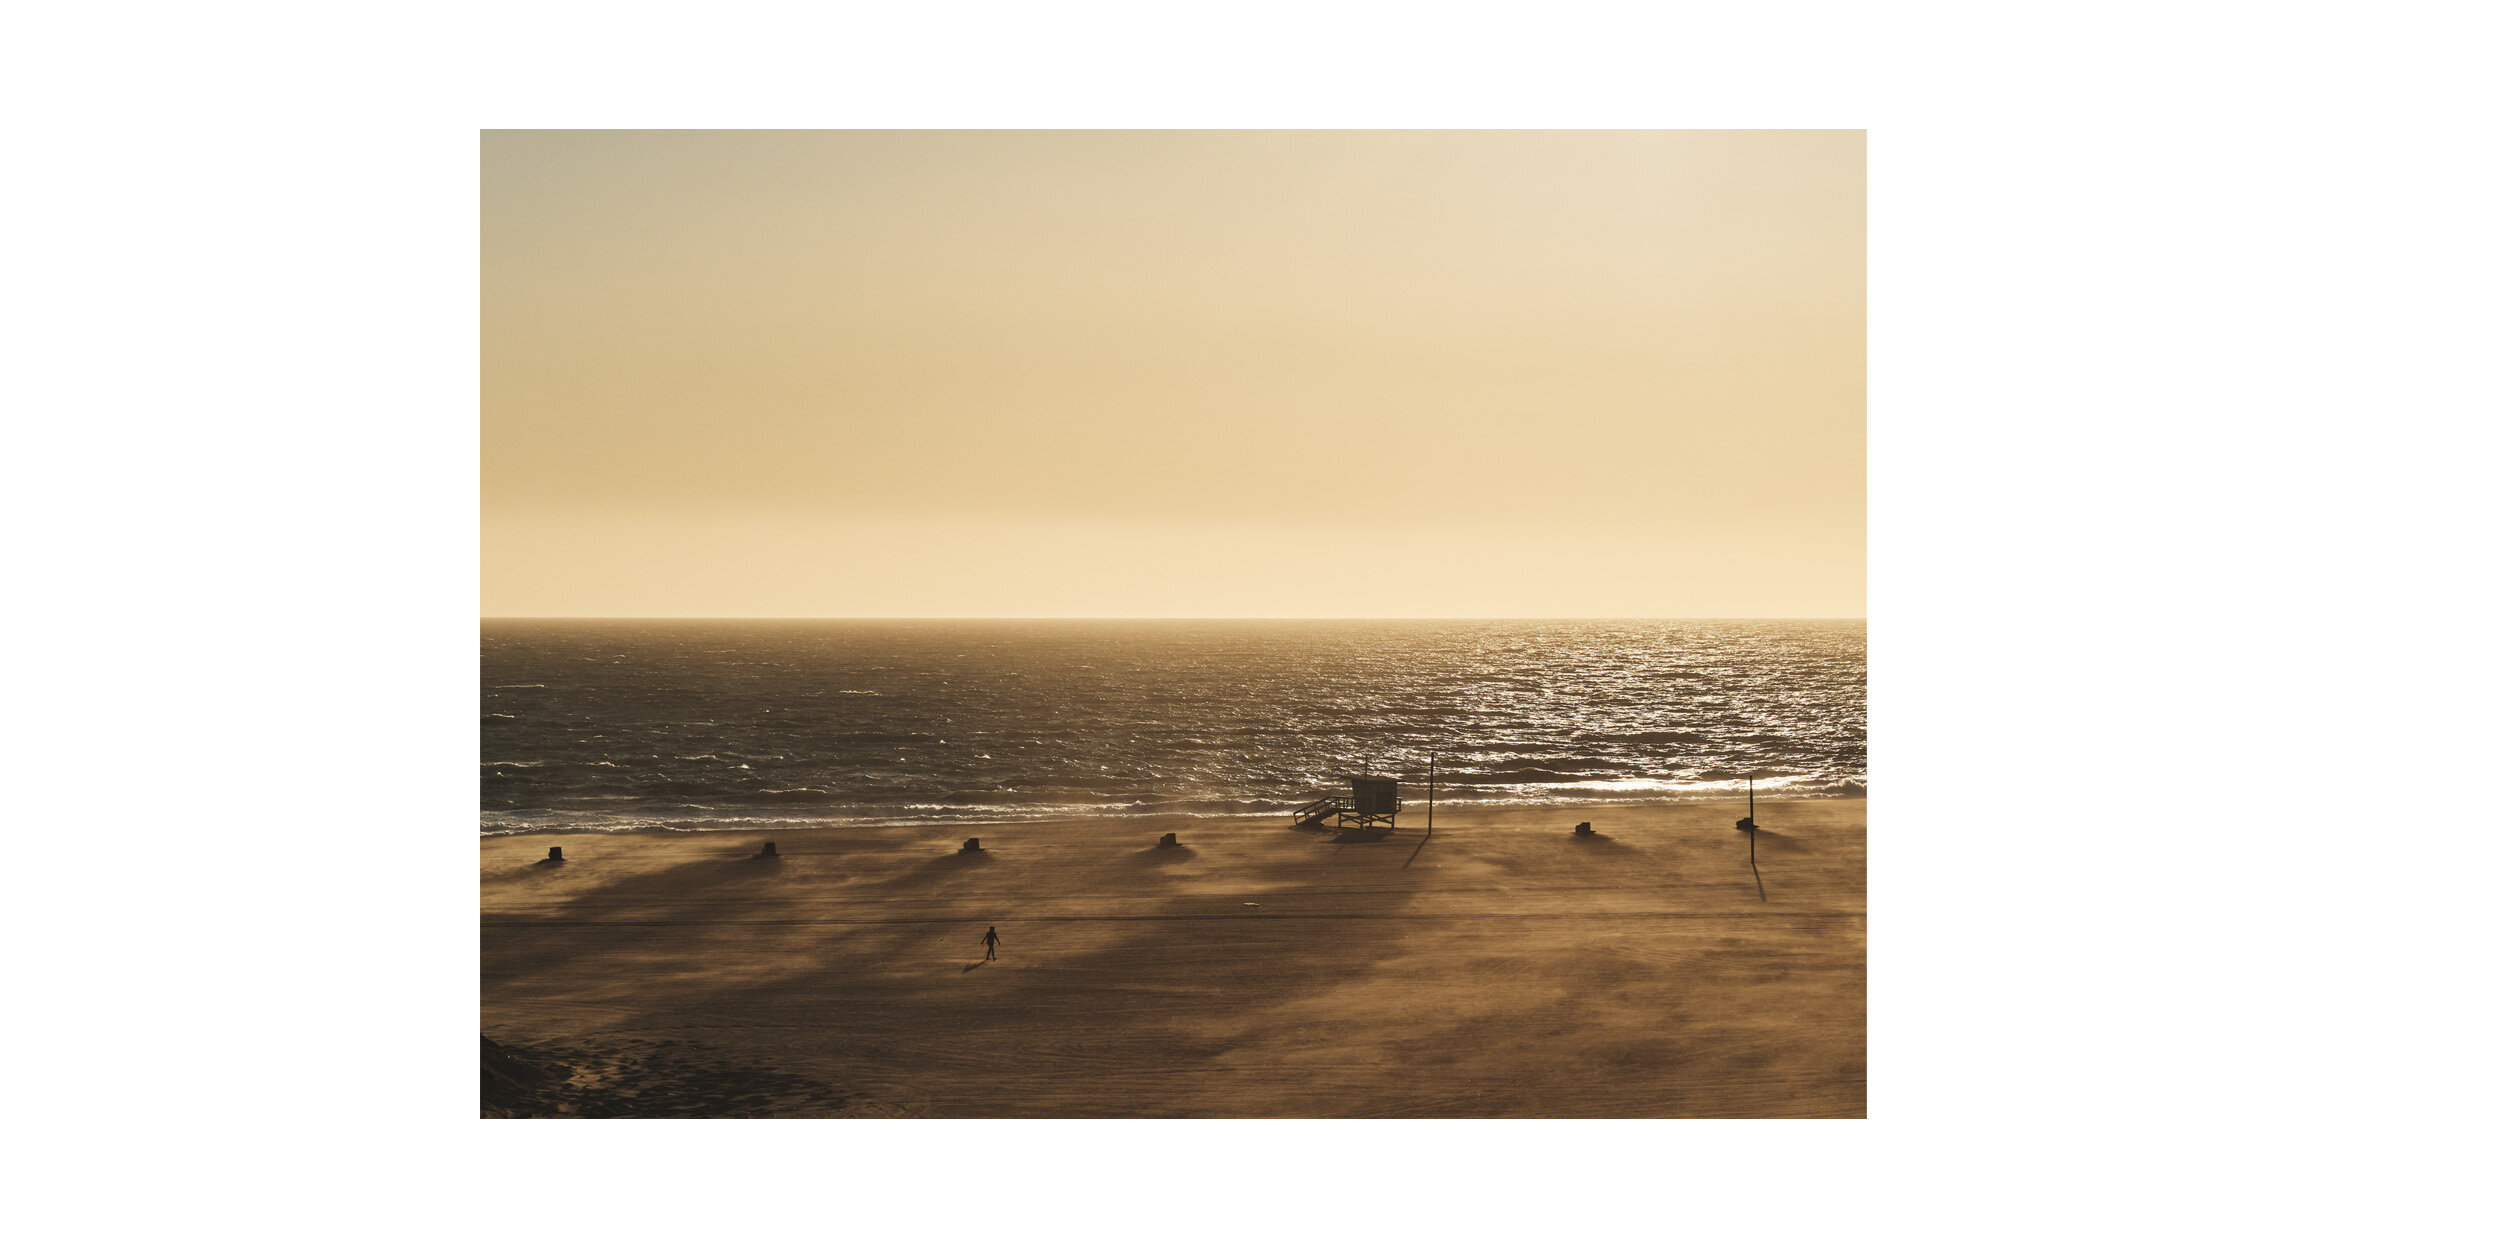  Santa Monica Beach during the coronavirus pandemic - THE NEW YORK TIMES 